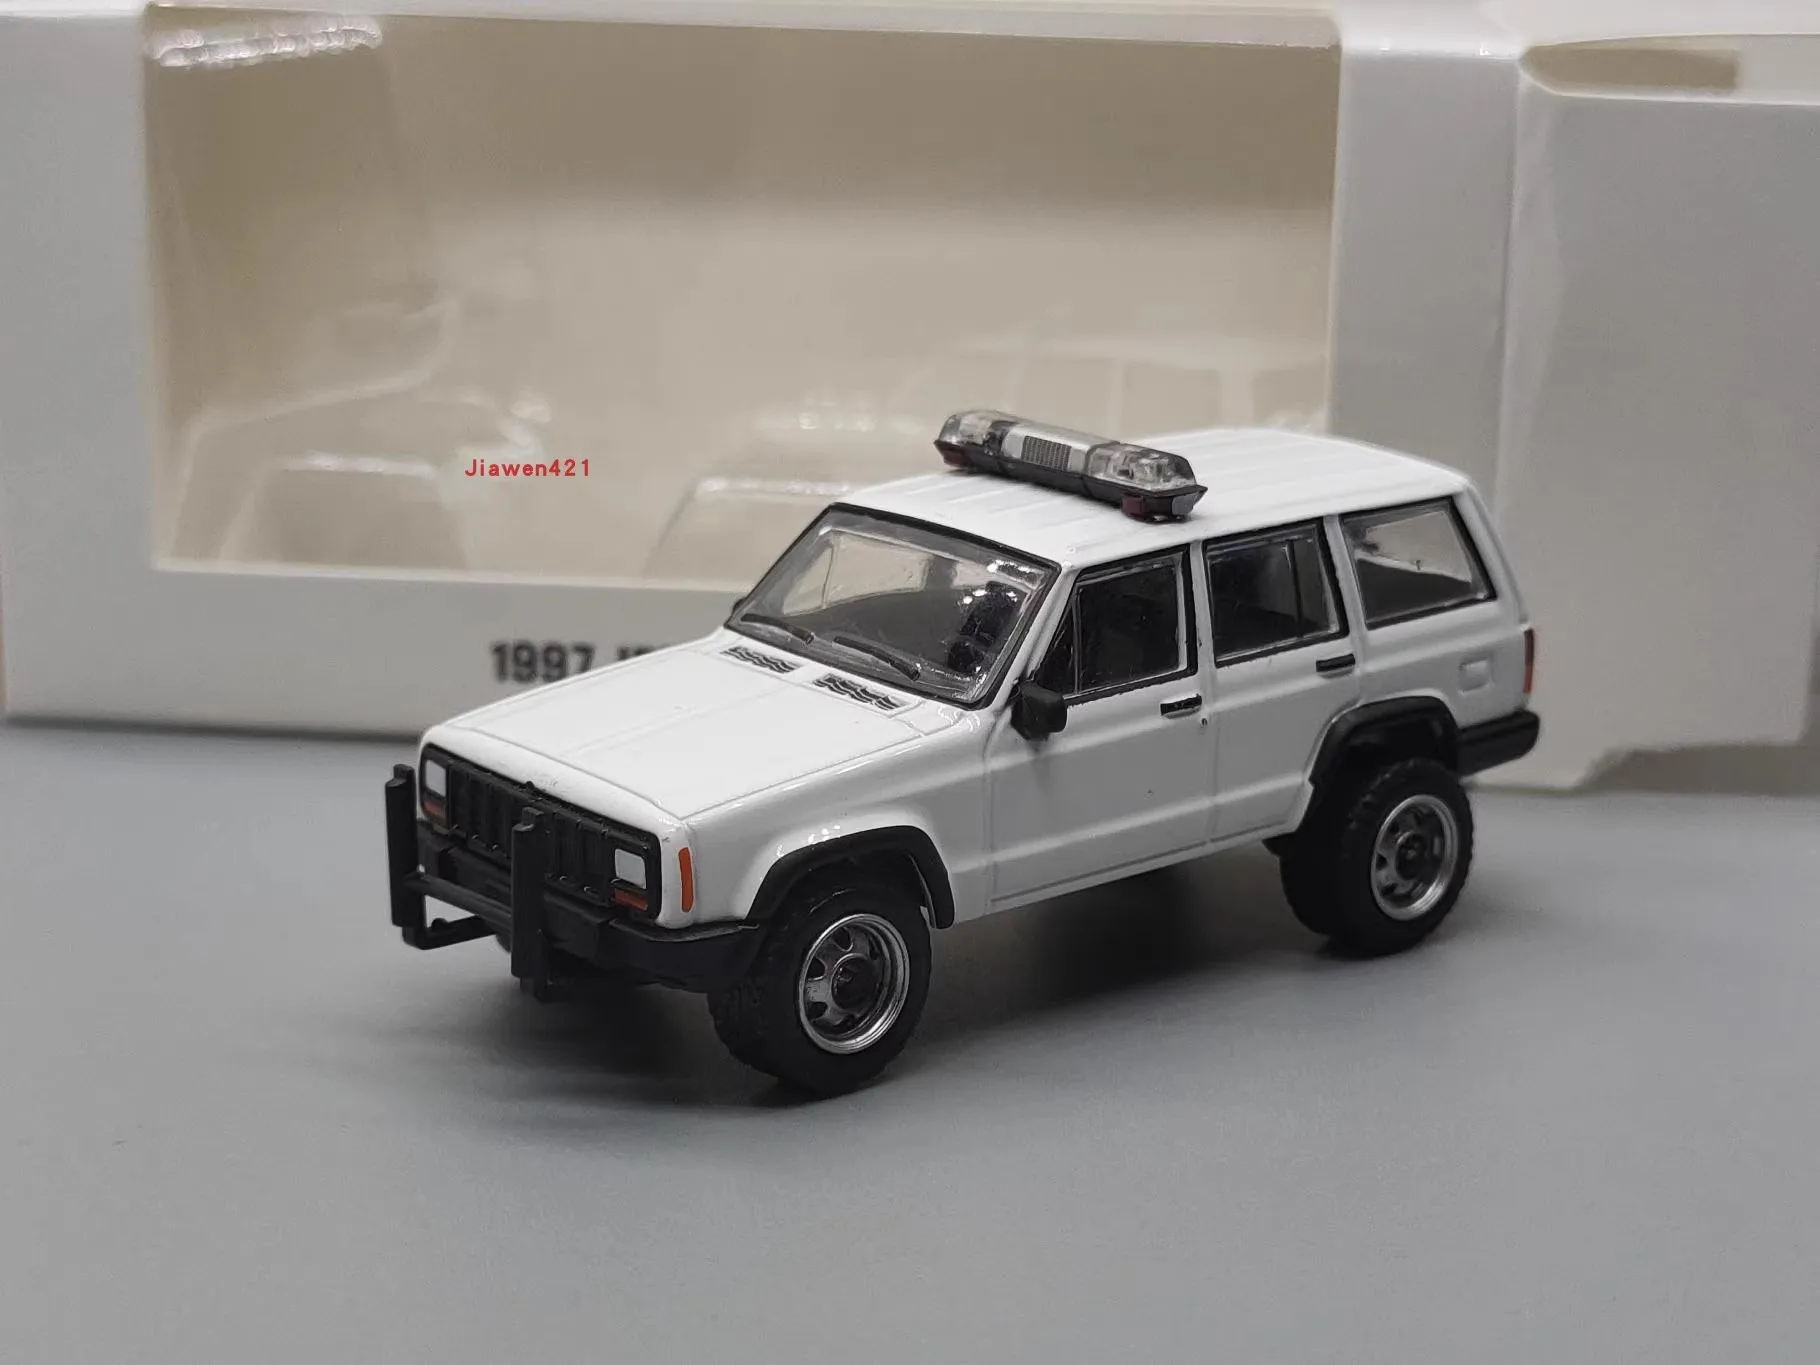 

1:64 1997 Jeep Cherokee полицейский автомобиль, литый под давлением металлический сплав, модель автомобиля, игрушки для коллекции подарков